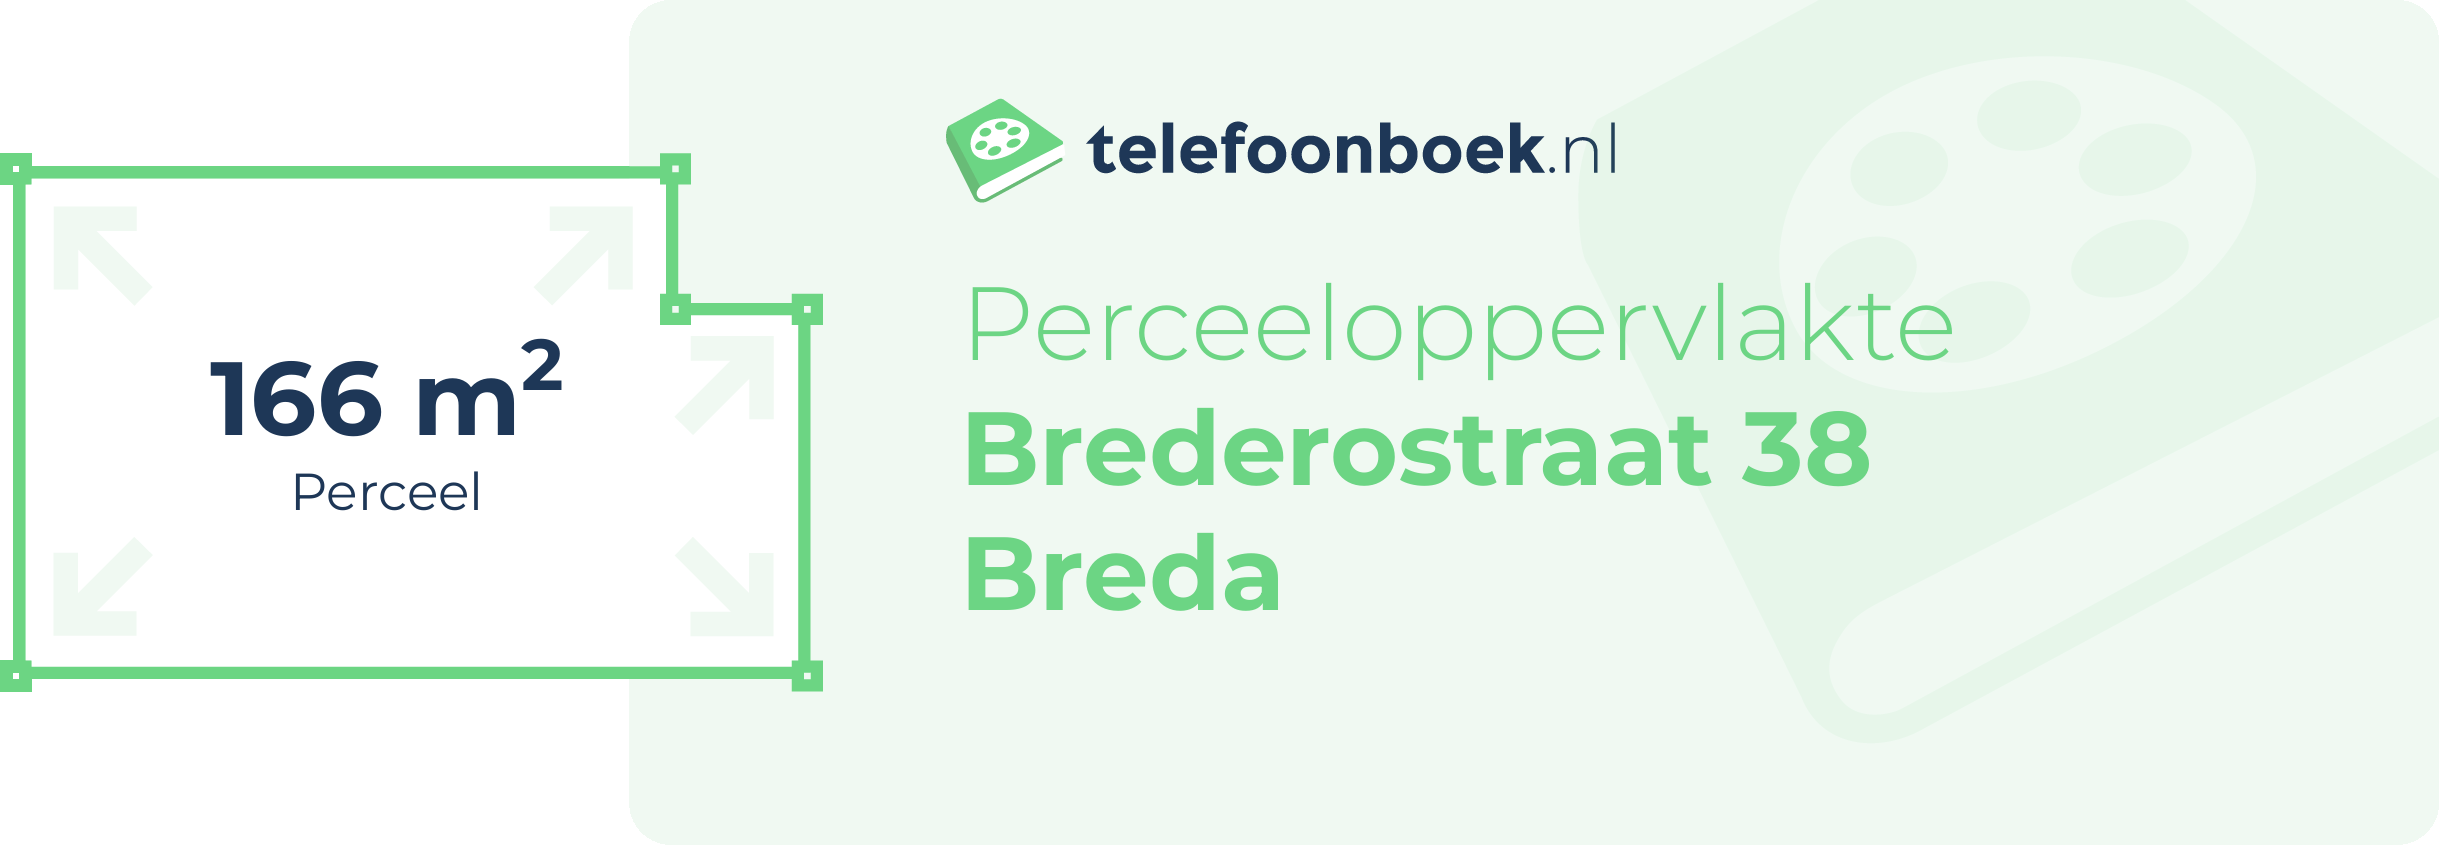 Perceeloppervlakte Brederostraat 38 Breda